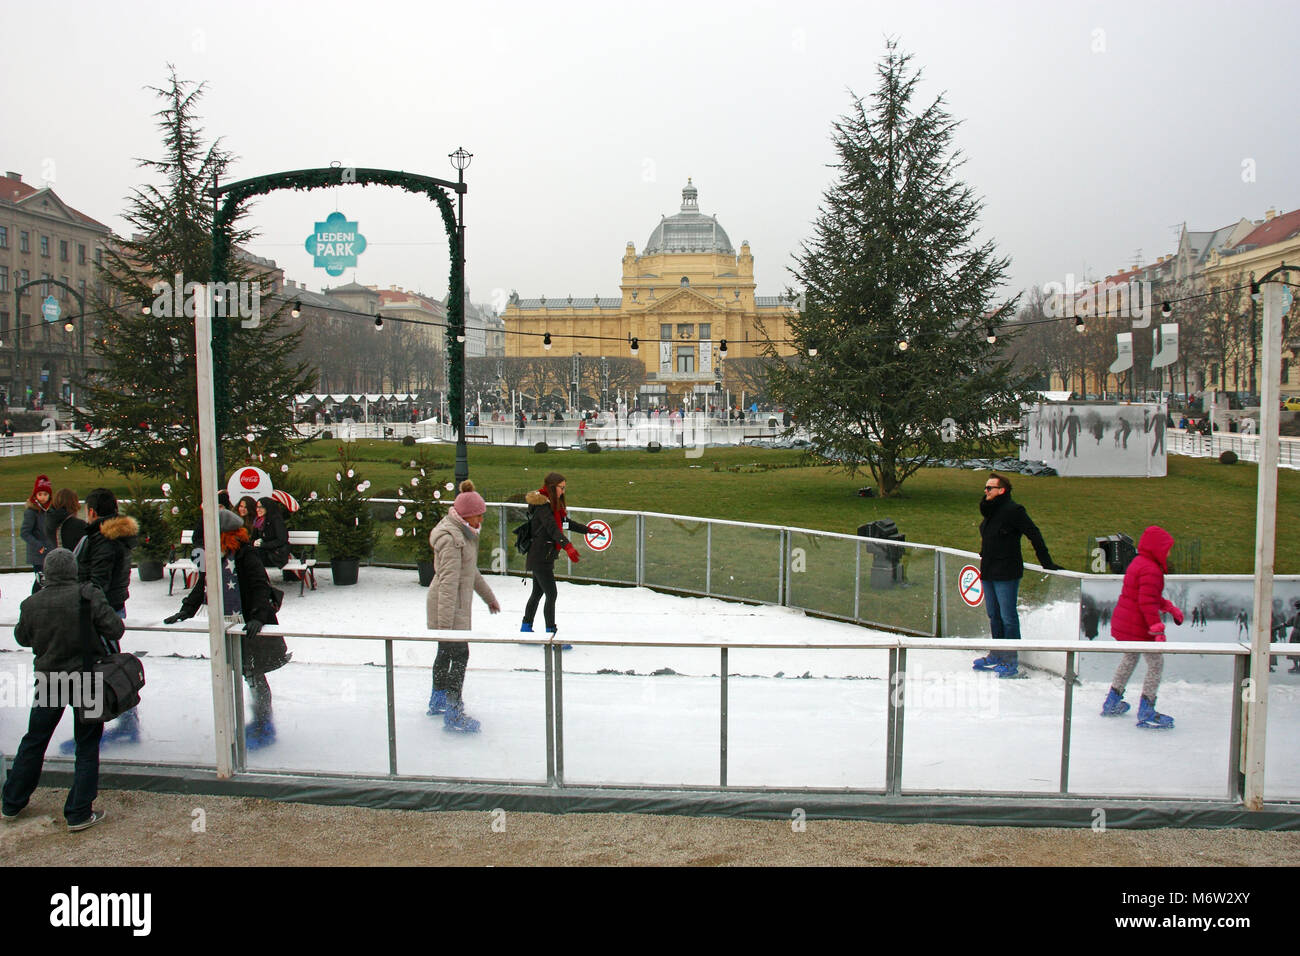 Kroatien Zagreb, 18. Dezember 2016: Eislaufen Park im Winter auf König Tomislav Square, in der Nähe der Kunst Pavillon, mit Besuchern Skaten rund um die Stockfoto